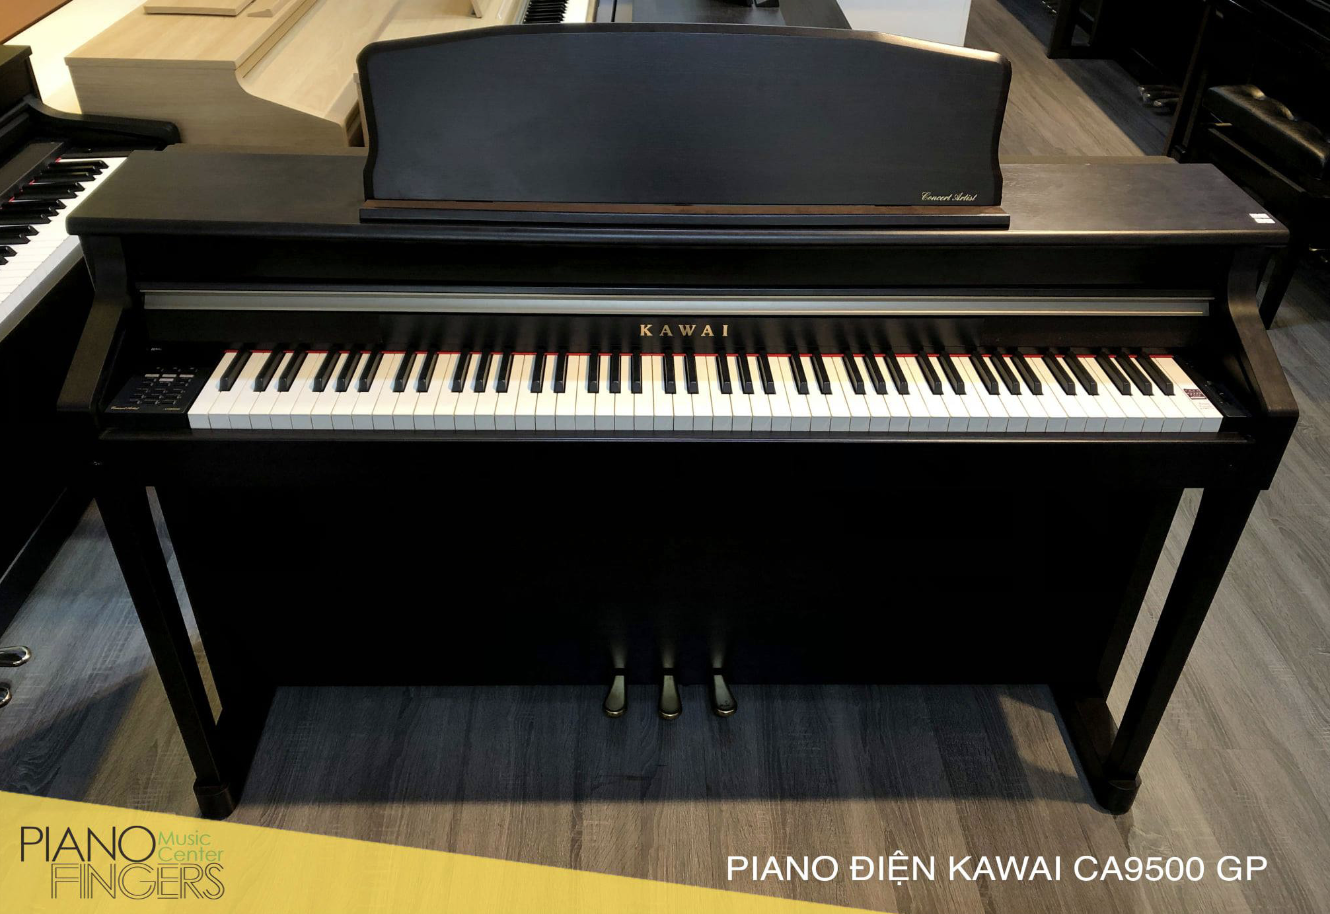 Năm sản xuất đàn piano điện Kawai từ năm 2010 đến nay - Kawai CA9500 GP